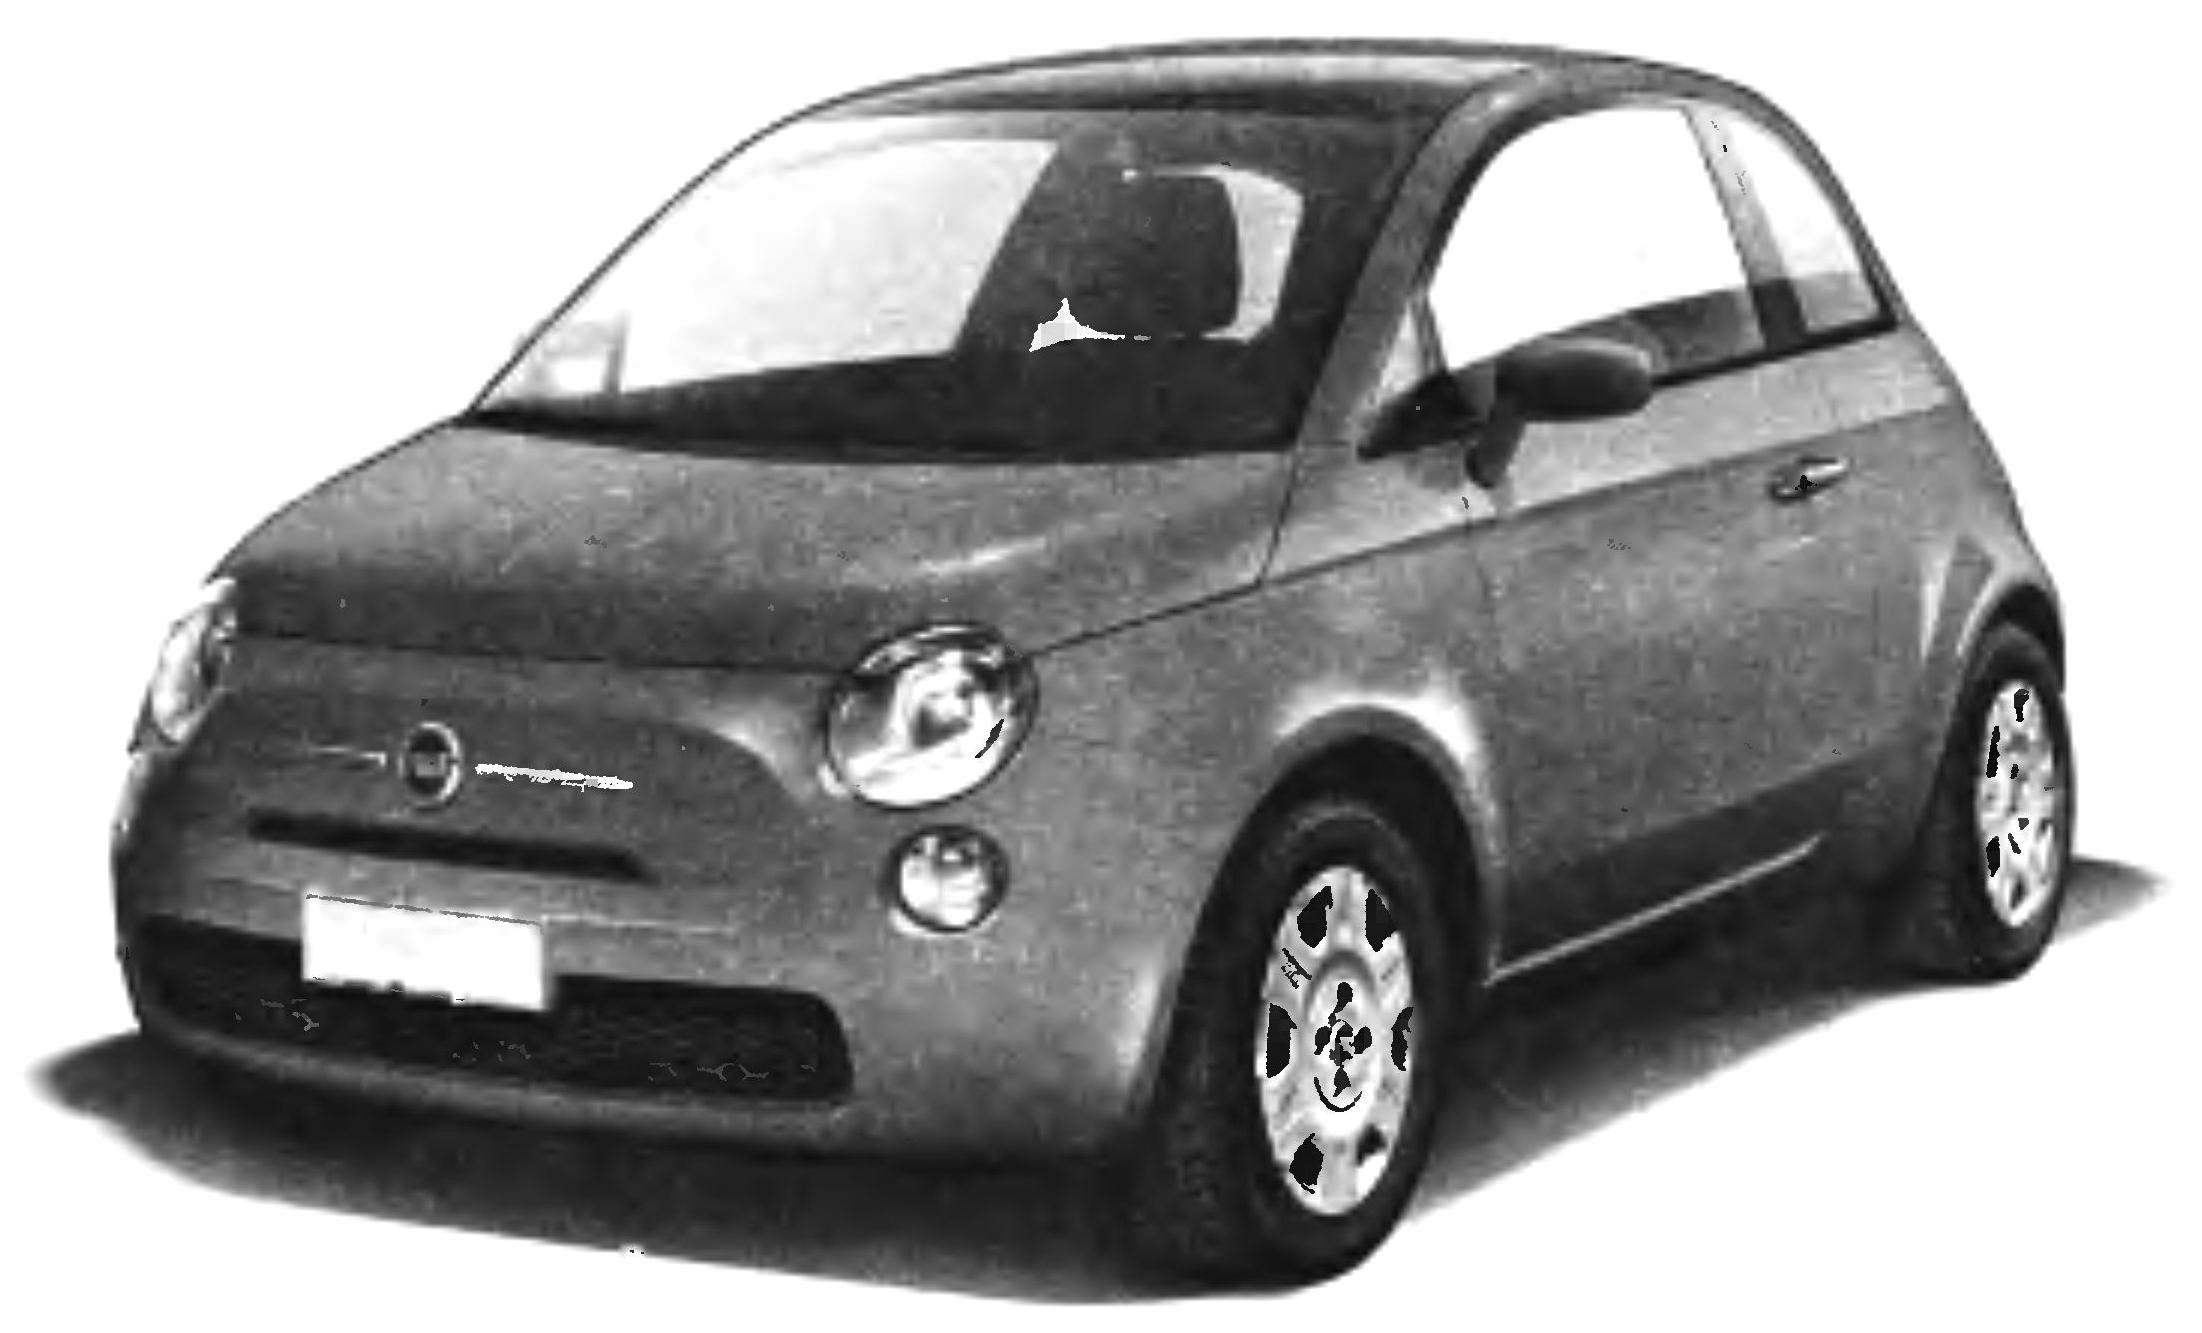 «Пятисотый» третьего поколения — FIAT-500 выпуска 2007 года и его компоновка